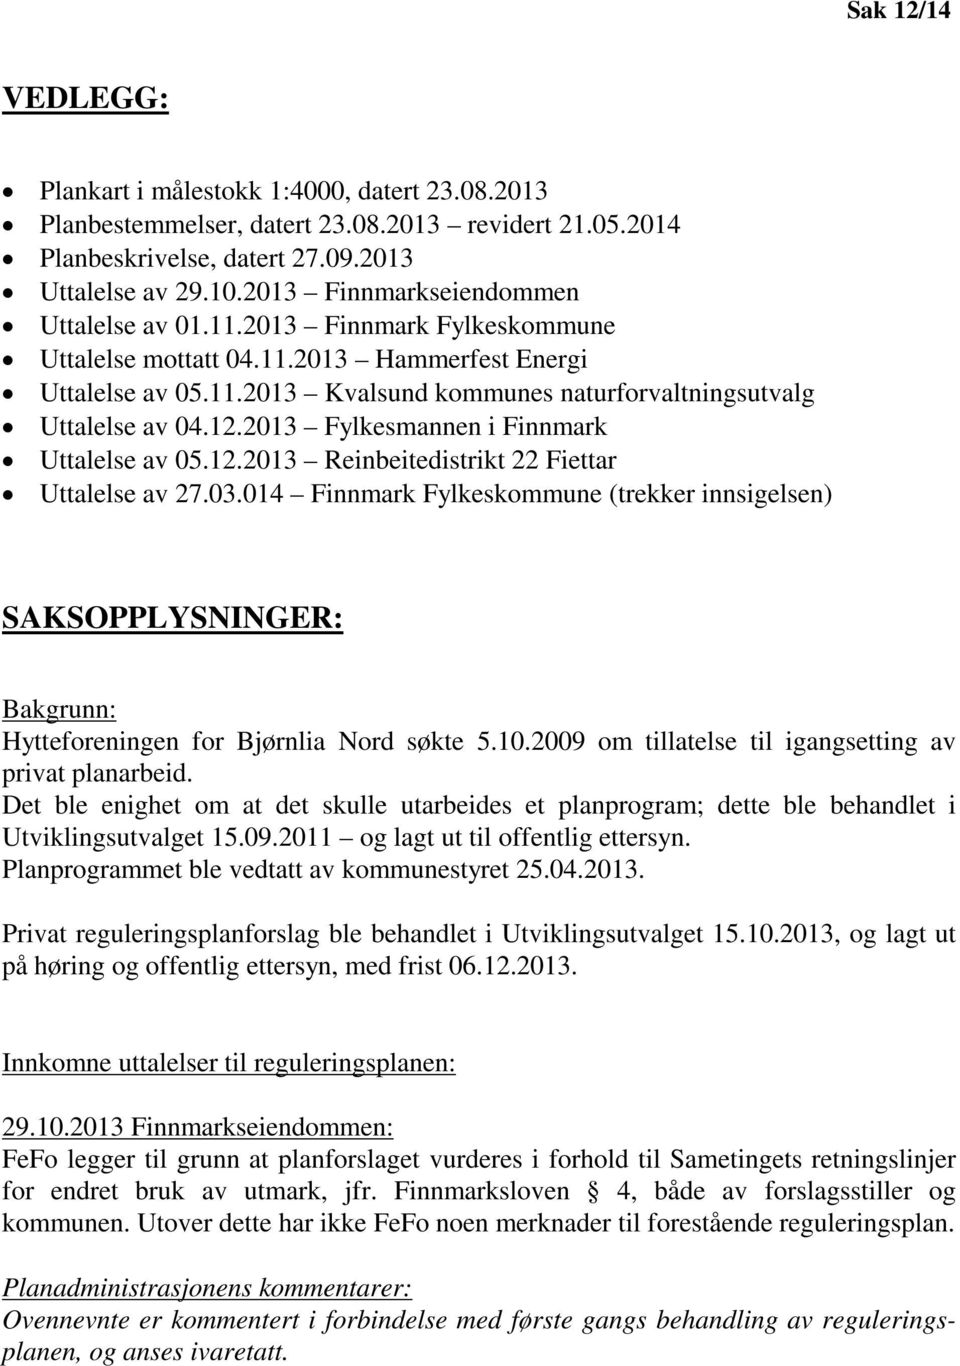 12.2013 Fylkesmannen i Finnmark Uttalelse av 05.12.2013 Reinbeitedistrikt 22 Fiettar Uttalelse av 27.03.